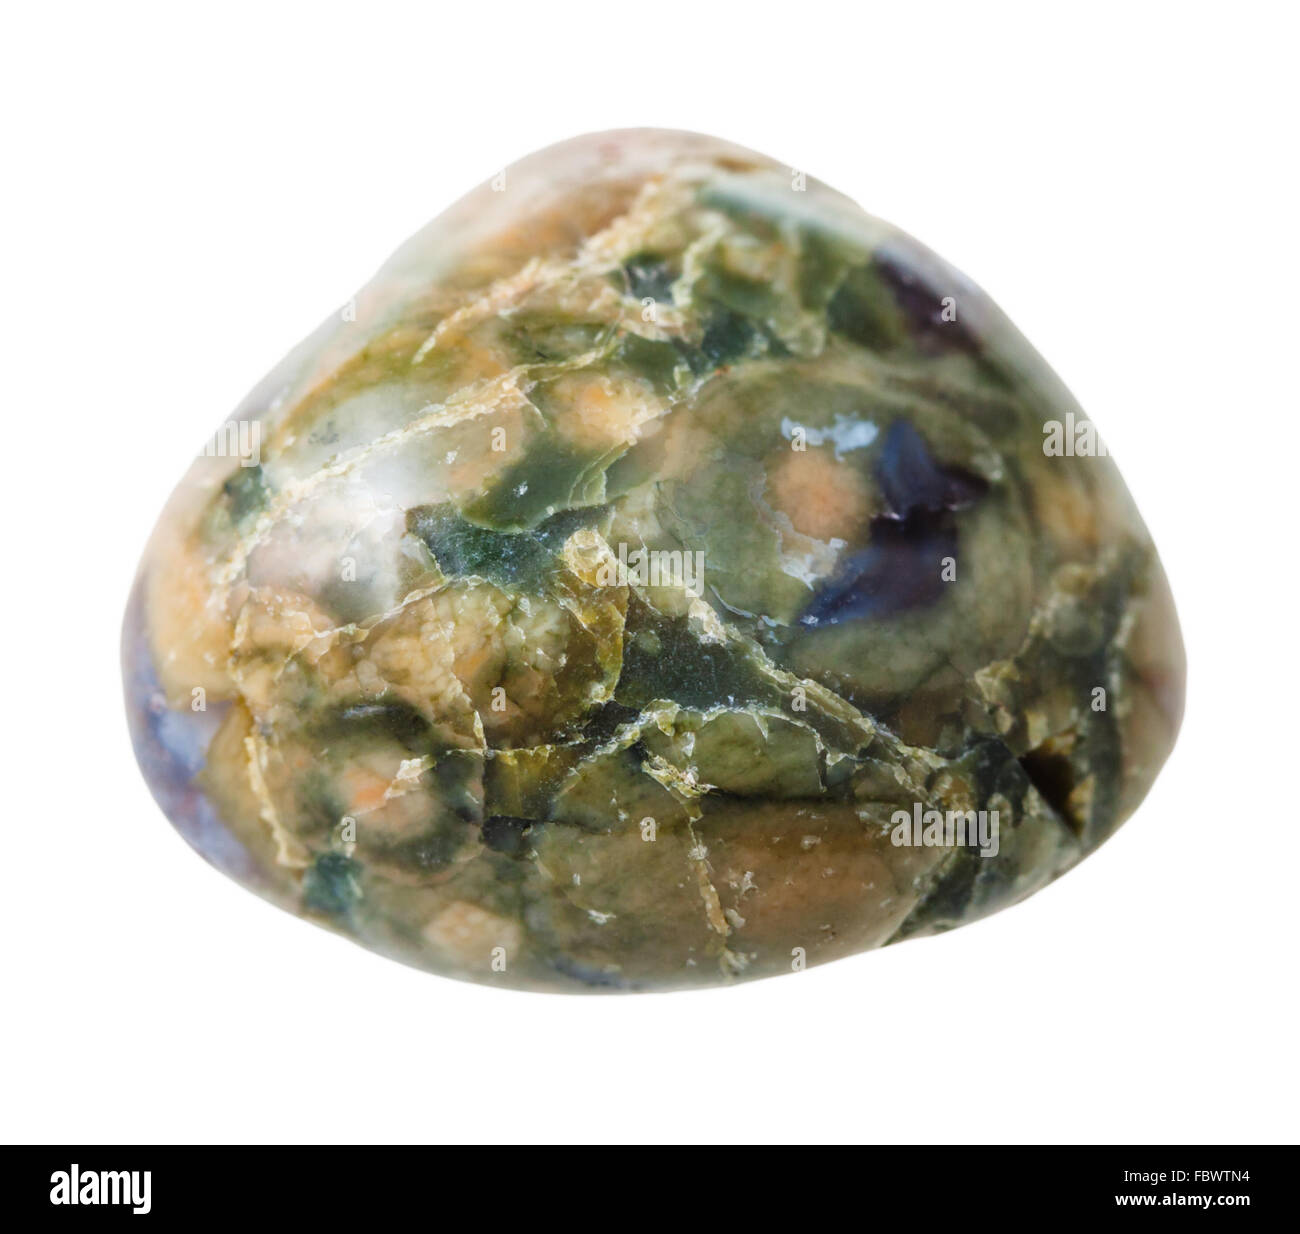 natürliche mineralische Edelstein - ein wenig Grün Rhyolith (Regenwald-Jaspis) Edelstein isoliert auf weißem Hintergrund hautnah Stockfoto